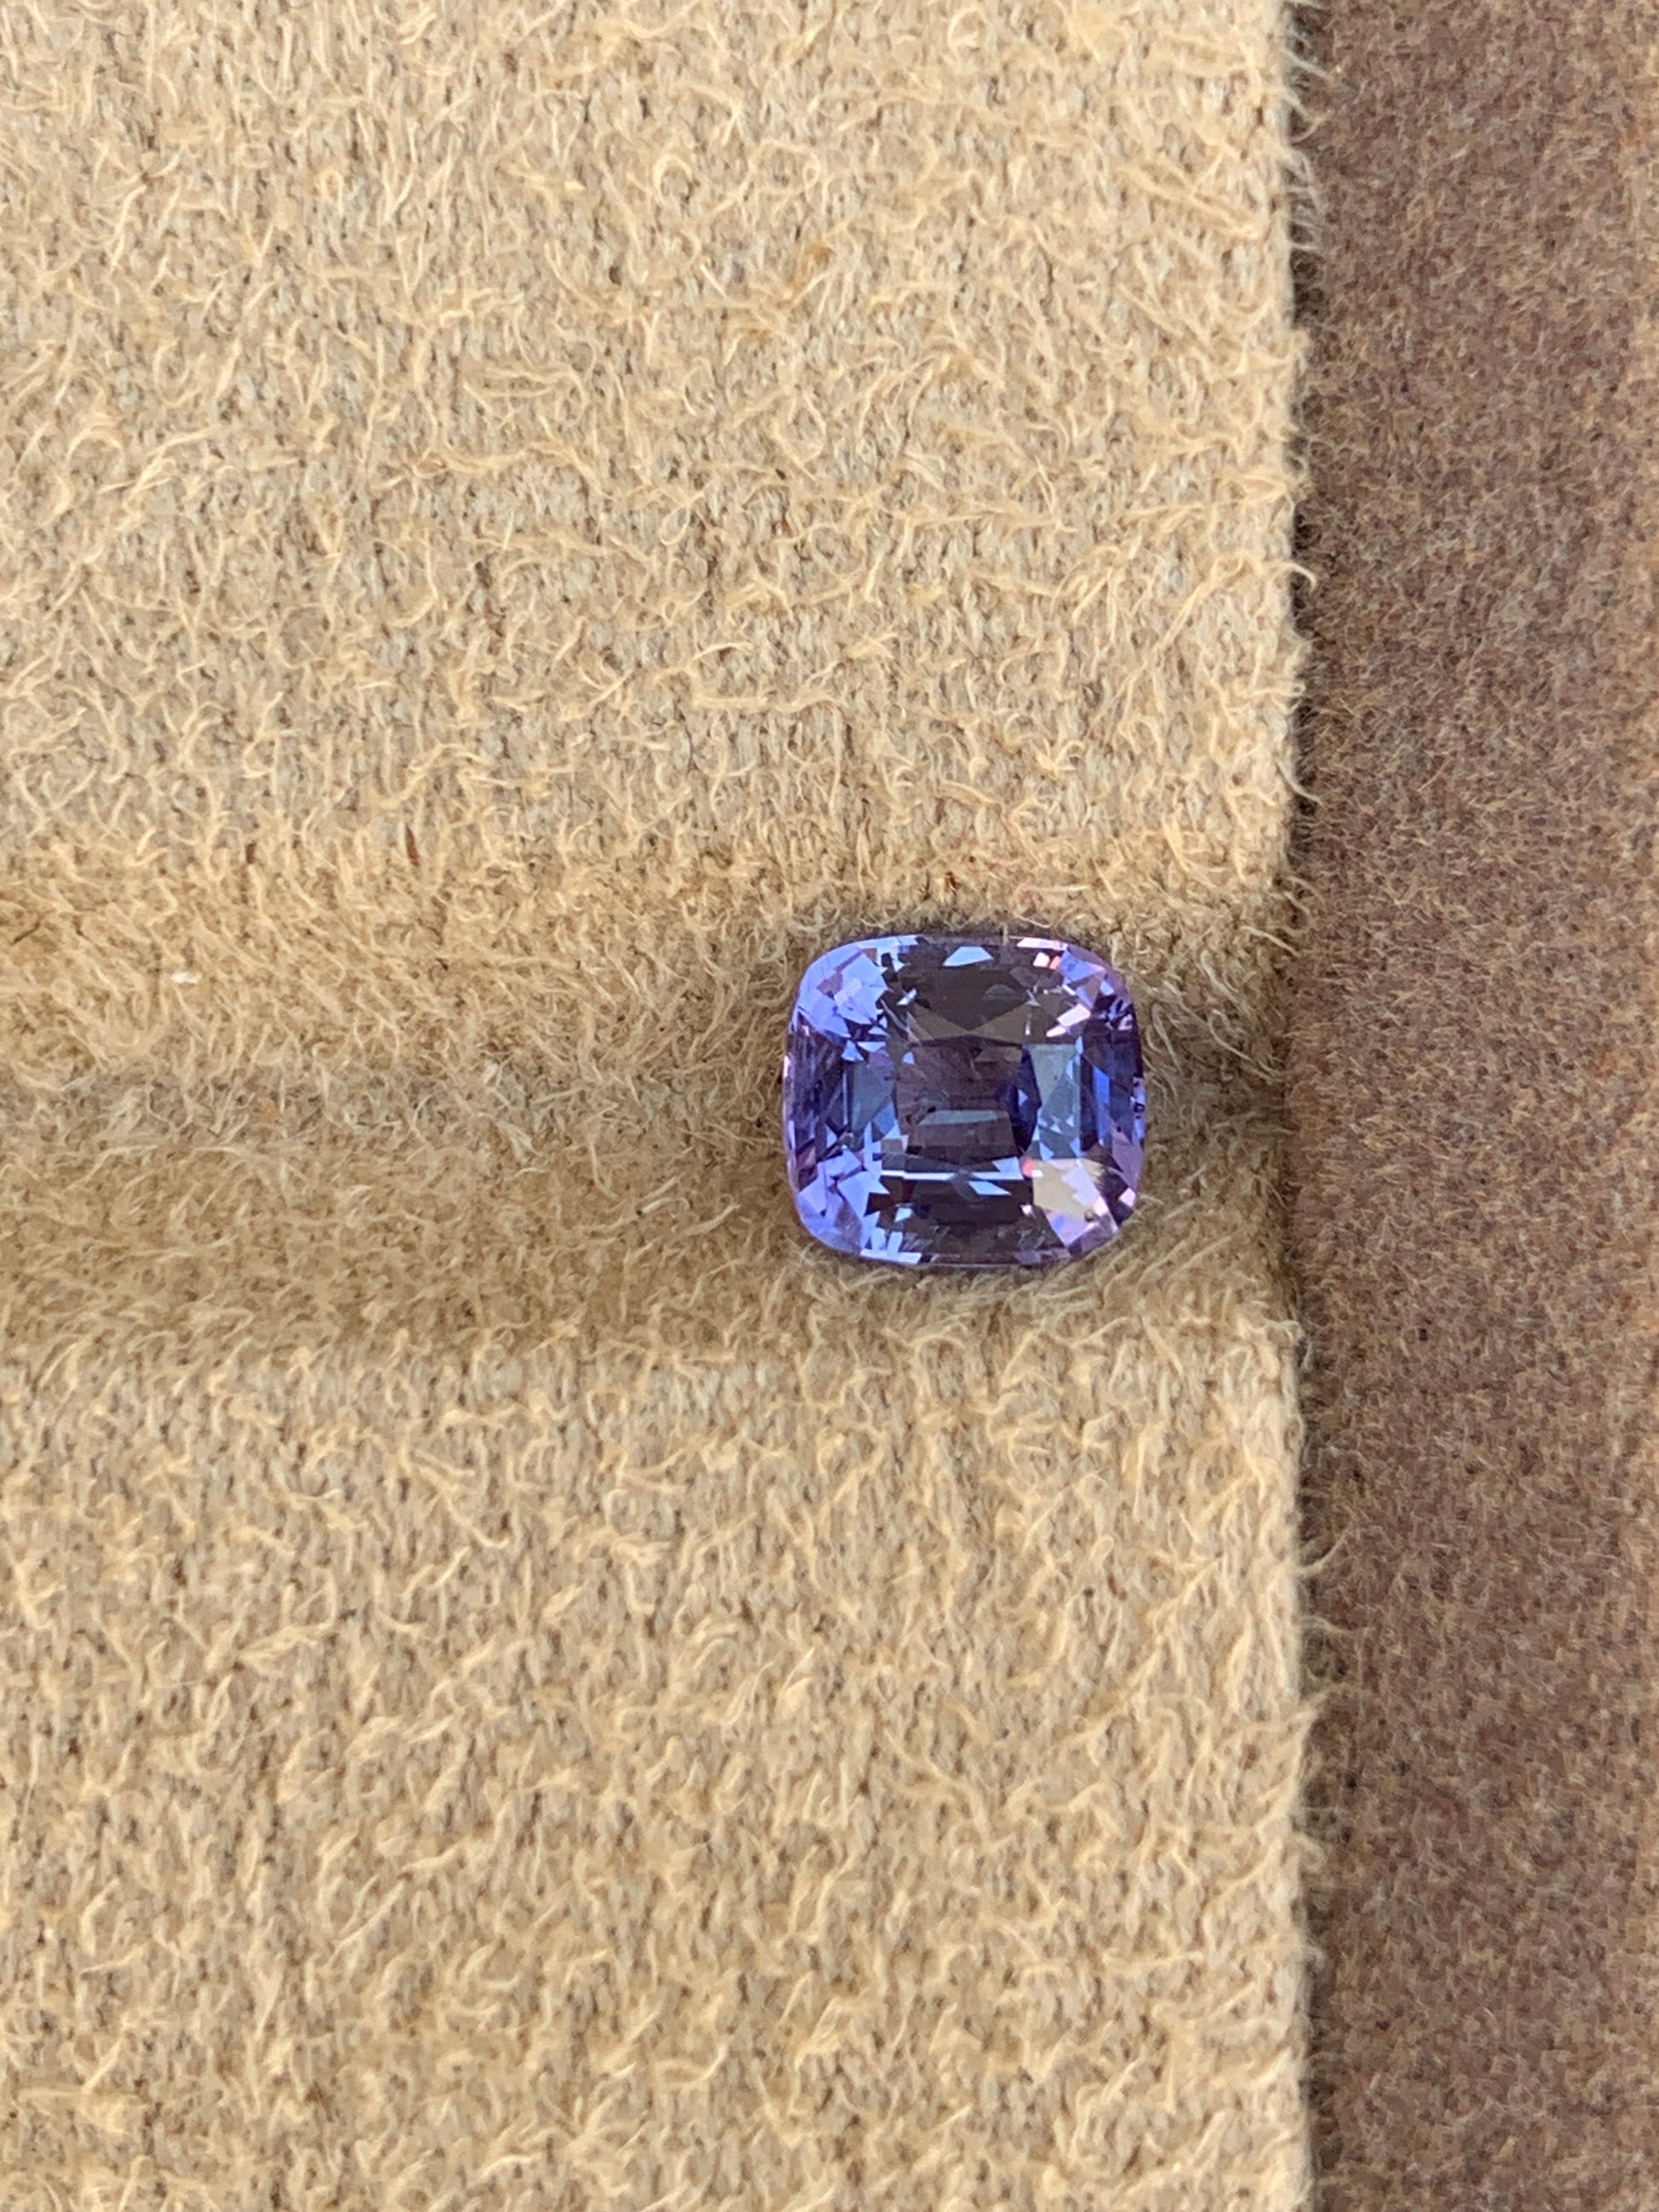 Saphir Violet Taille coussin de 1,62ct